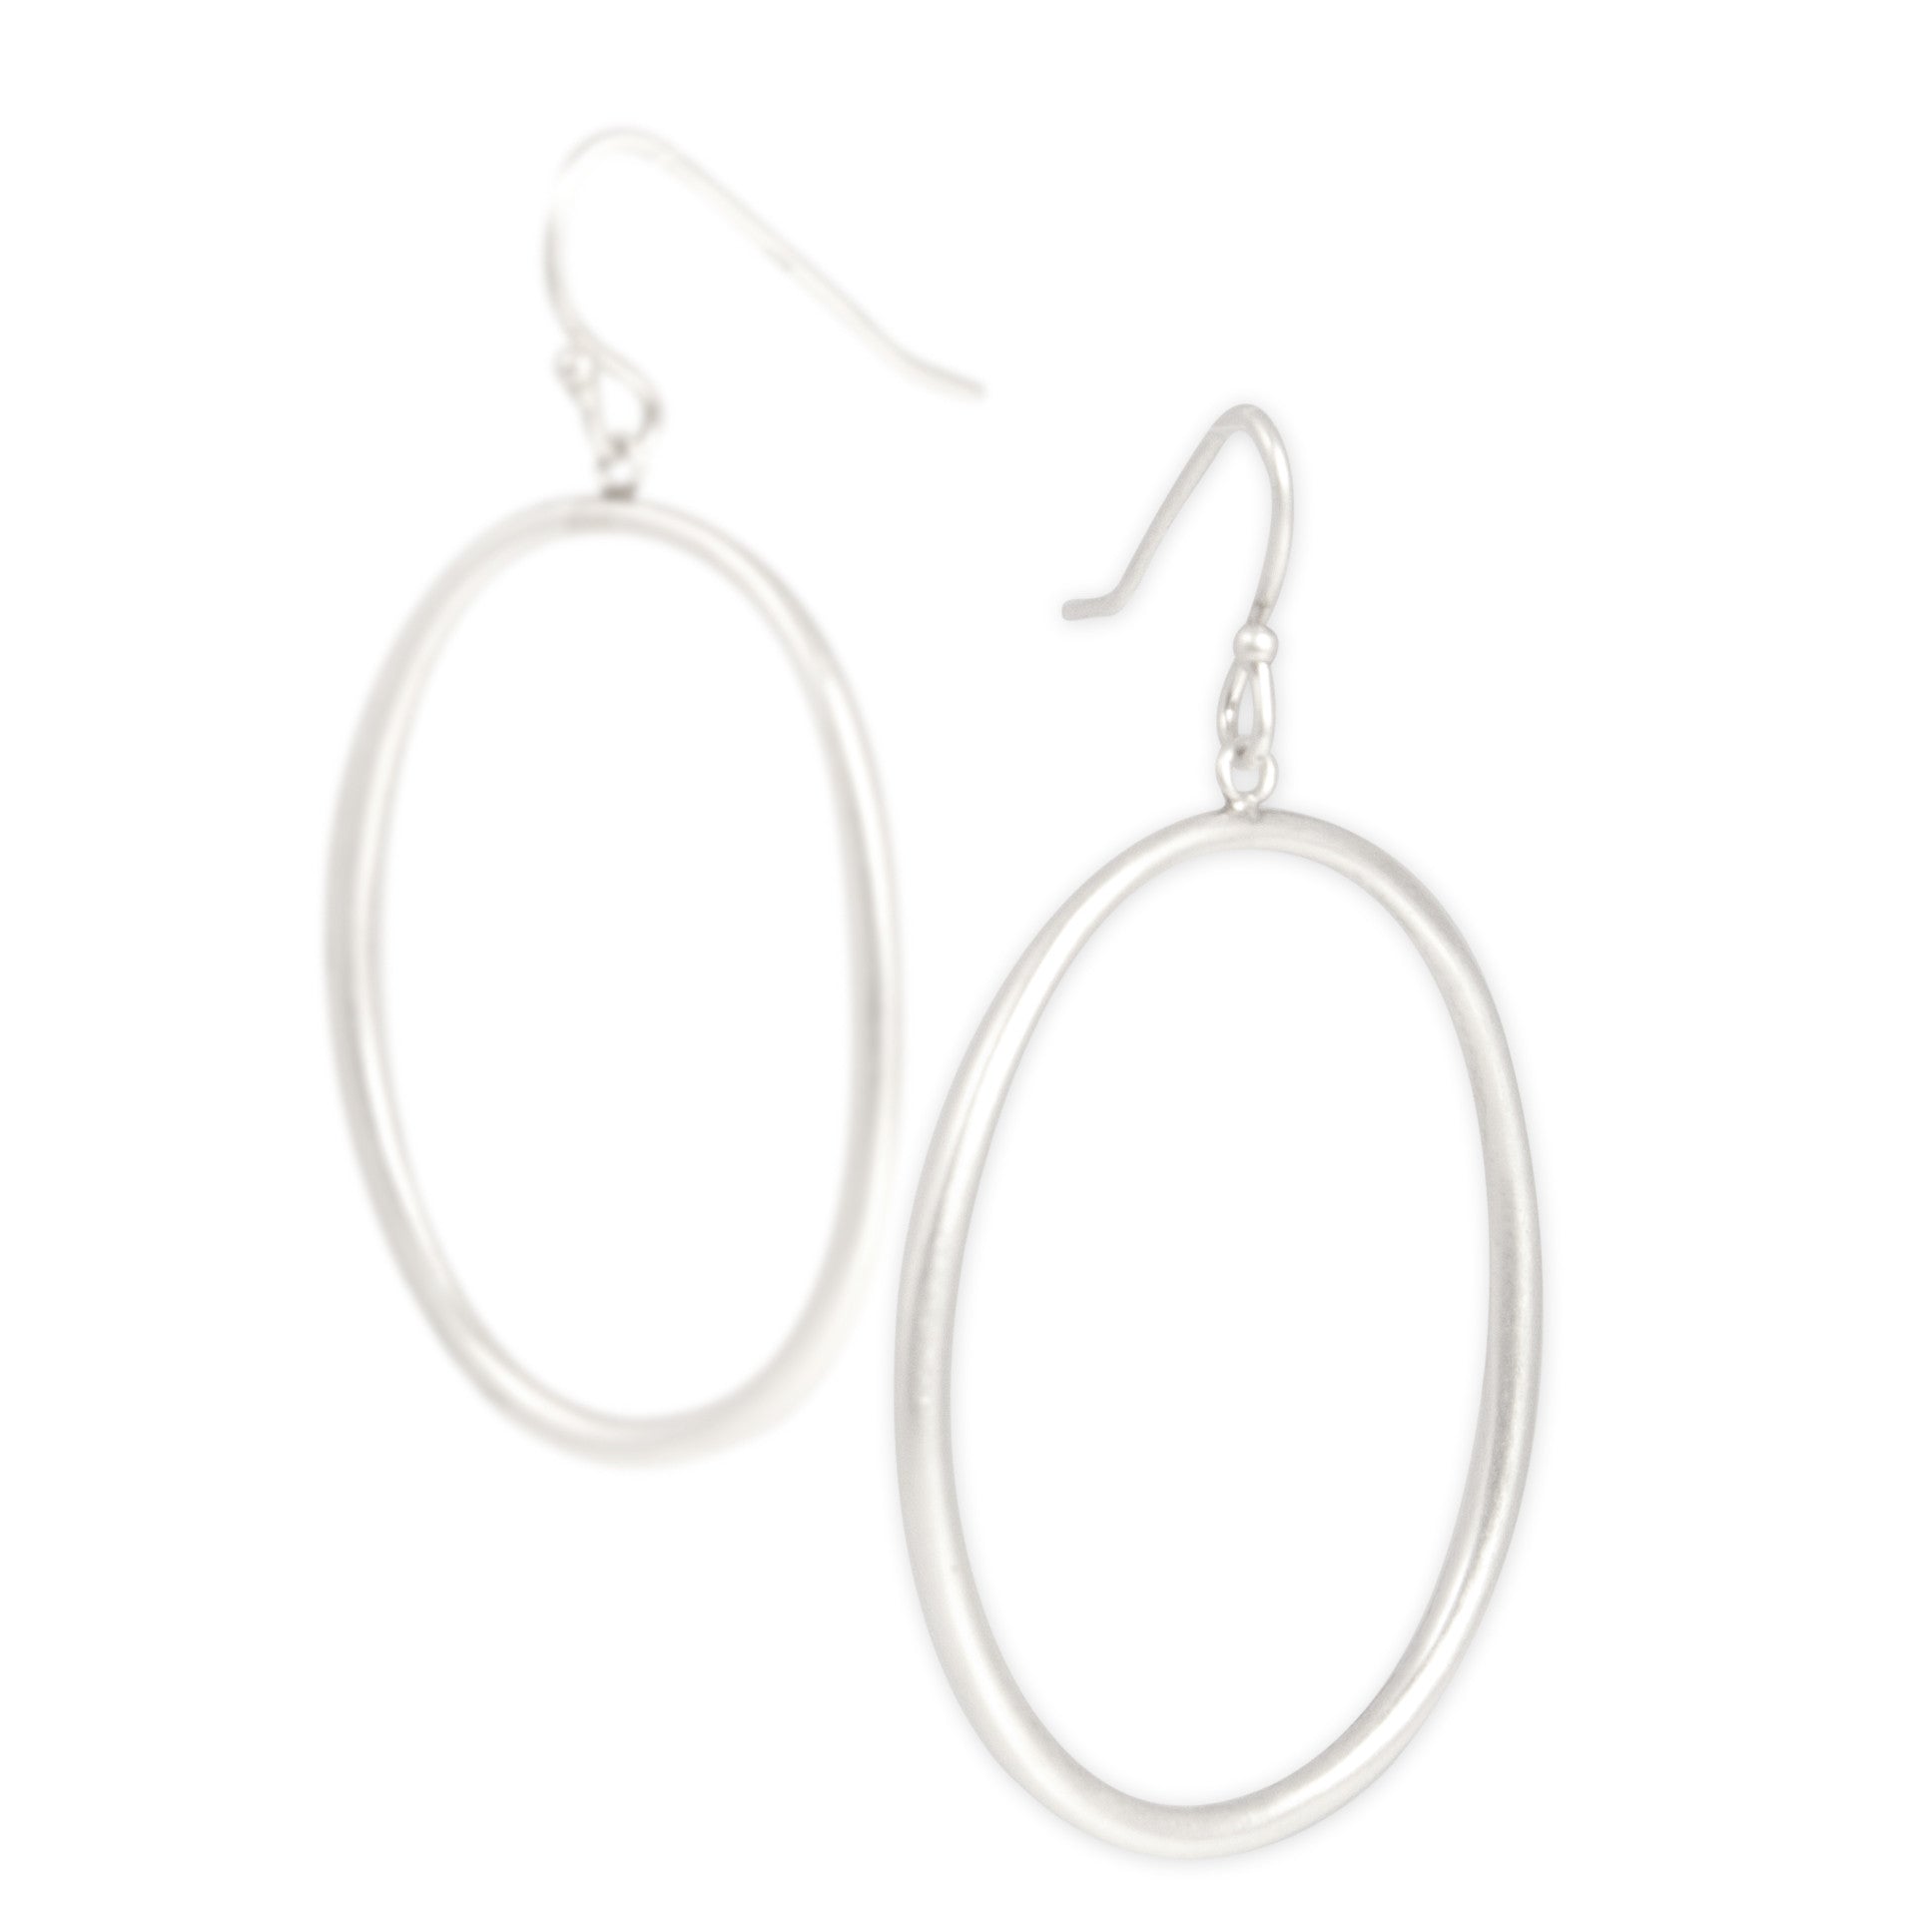 sterling silver / large "o" drop earrings